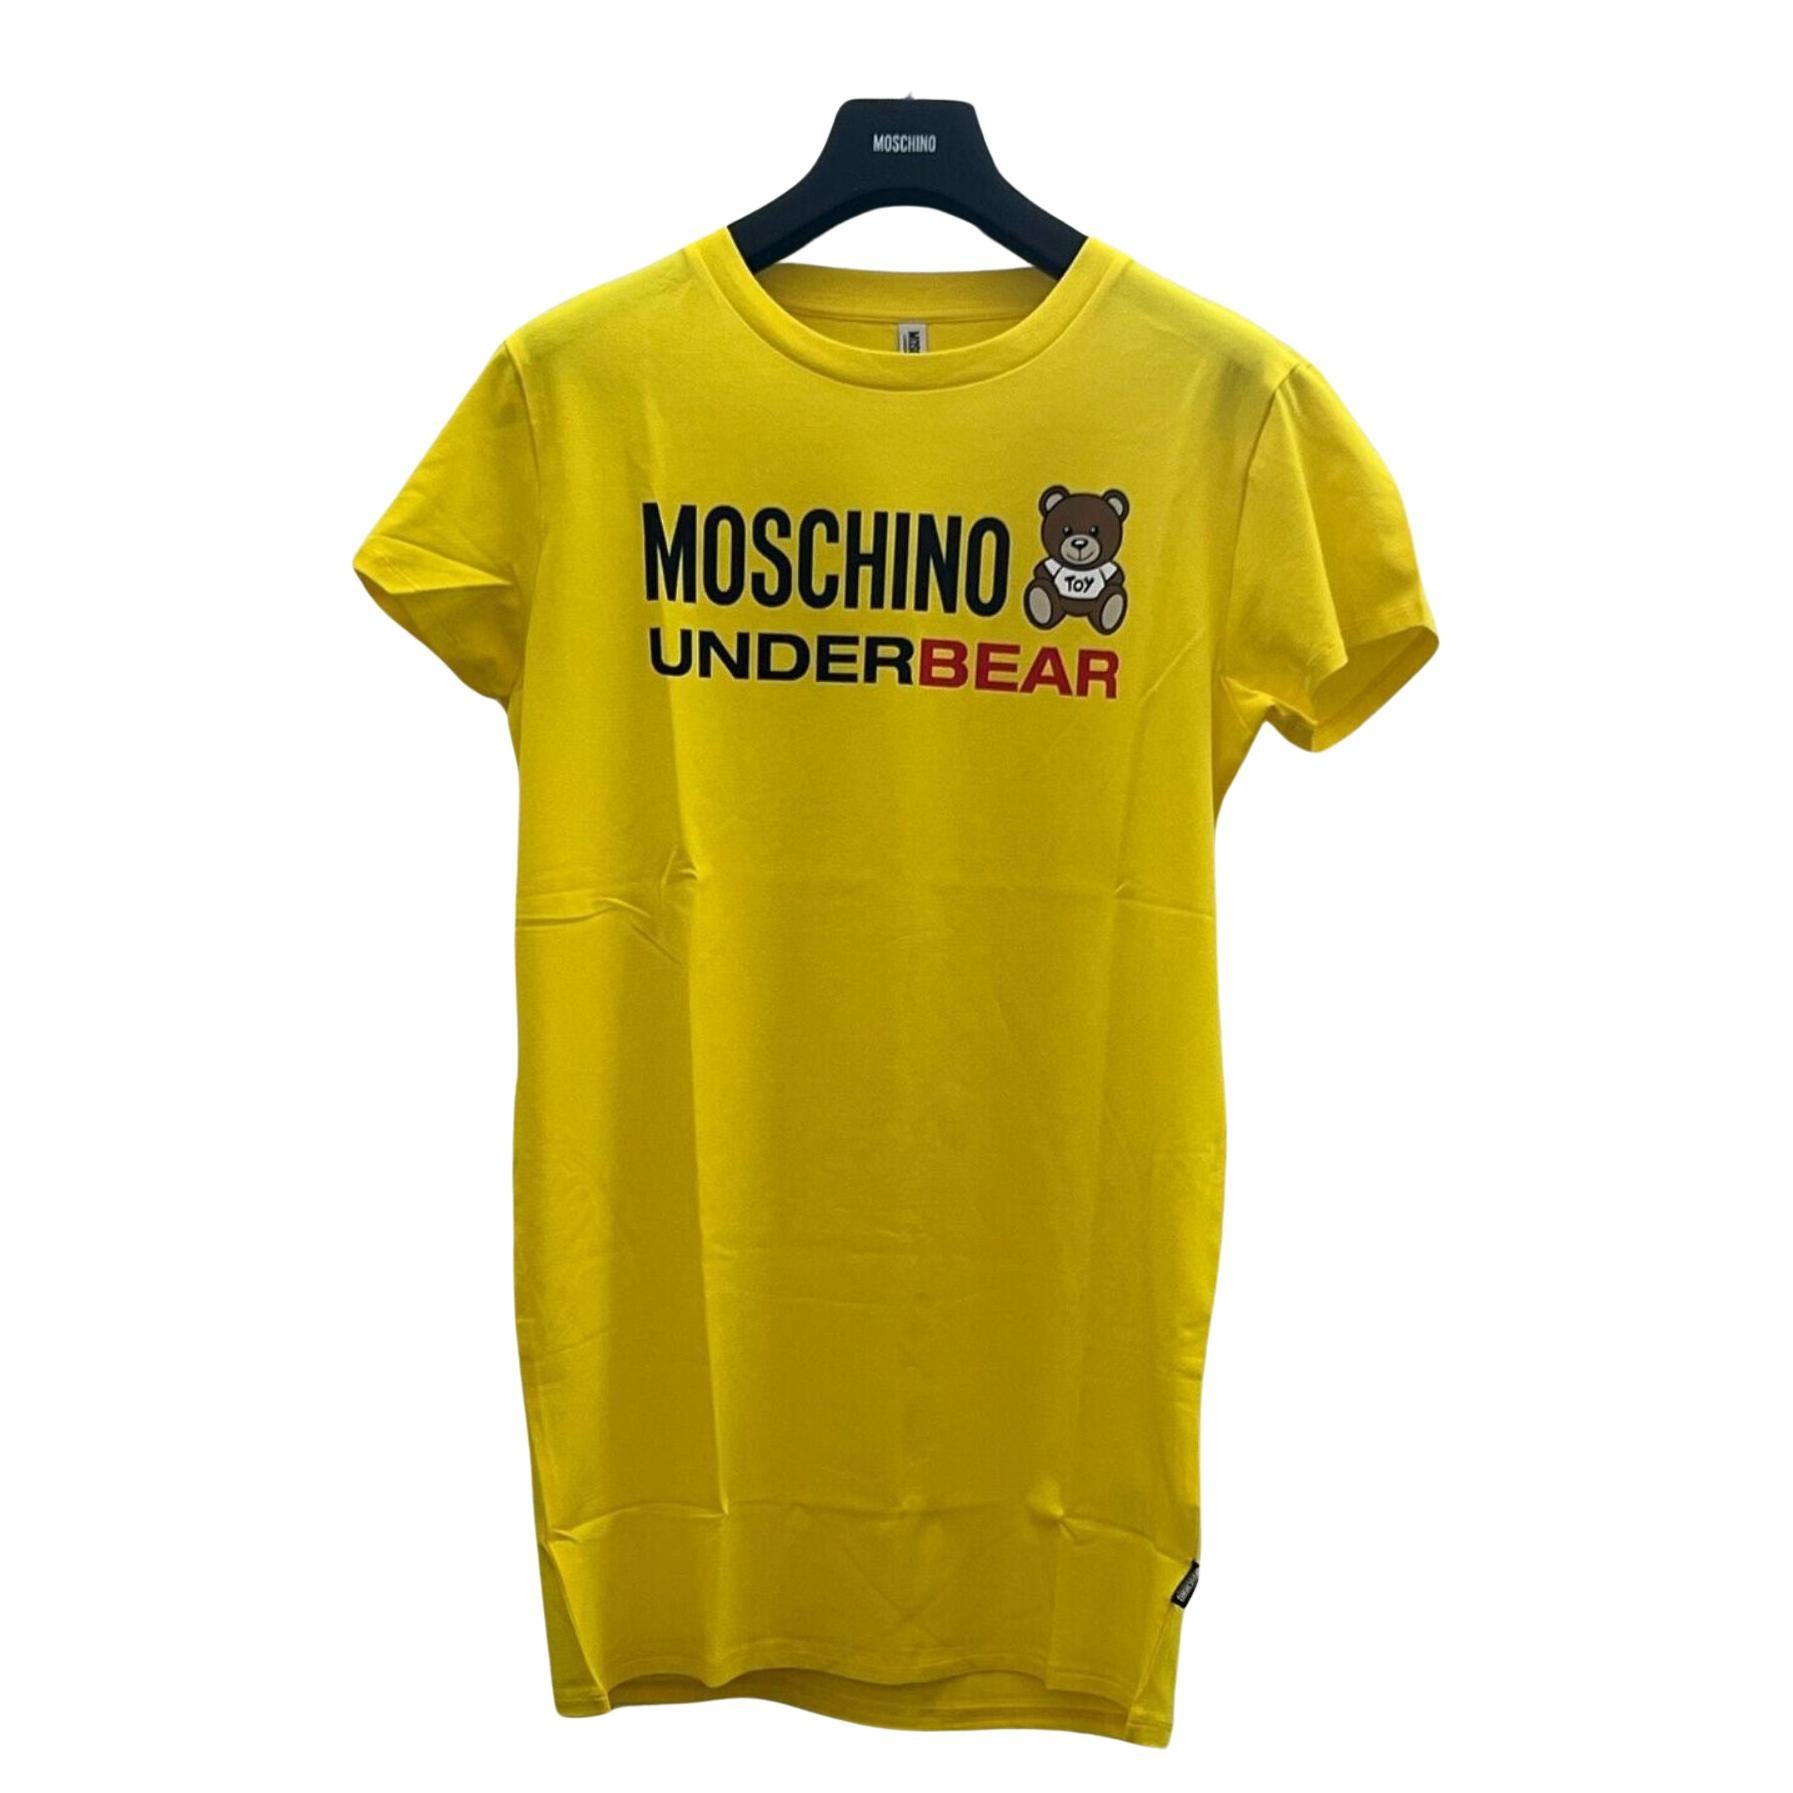 AW20 Moschino Underwear Underbear Teddy Bear T-shirt by Jeremy Scott, Size XS For Sale